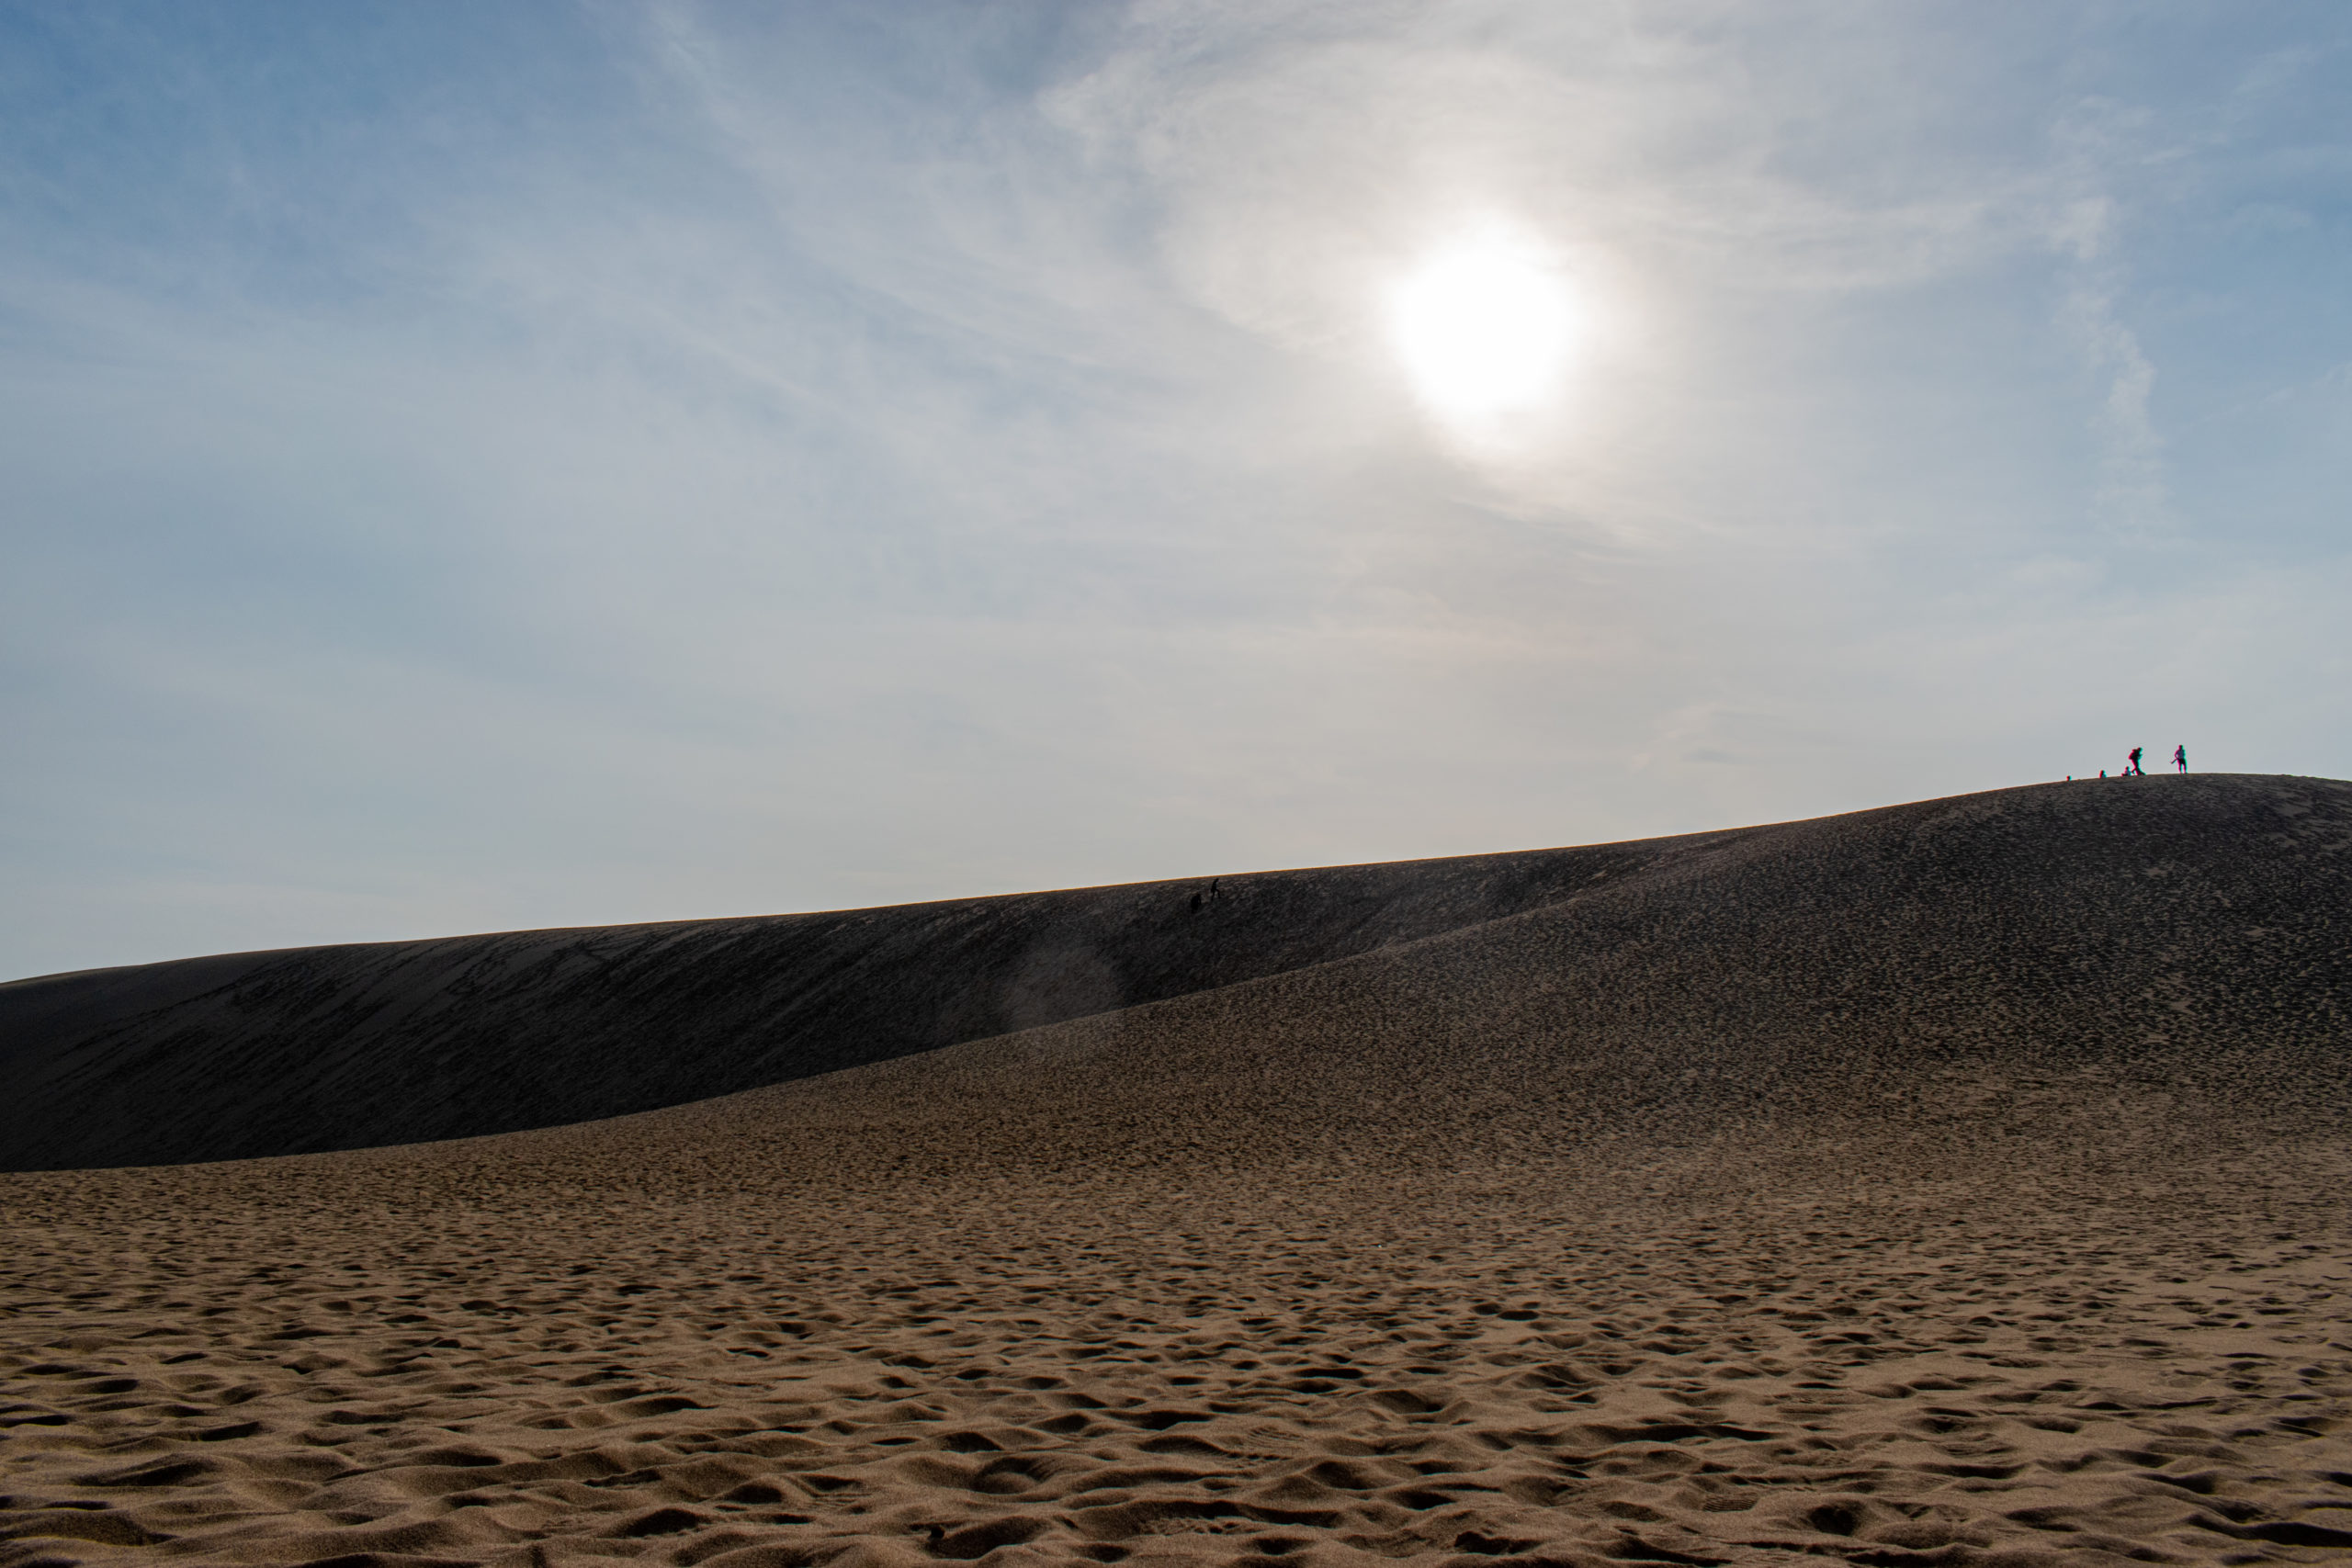 日本一有名な砂丘までの行き方を考えてみた。鳥取県の鳥取砂丘への行き方。